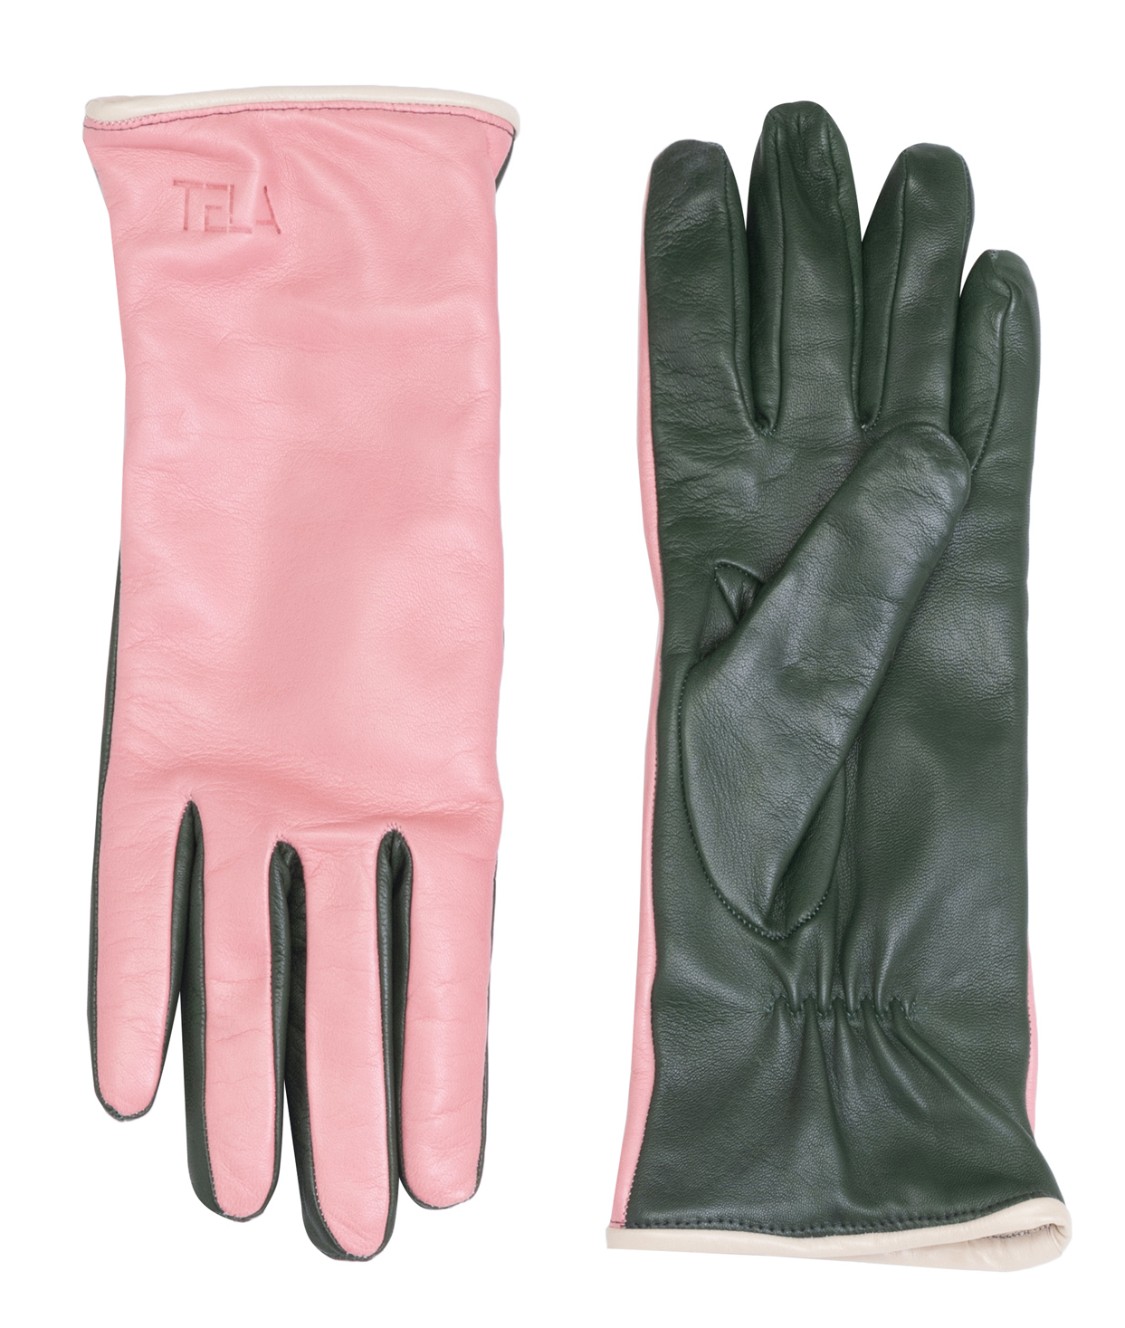 shop Tela  Accessori: Accessori Tela, guanti in pelle multicolore: rosa e verde.

Composizione: 100% pelle. number 2470